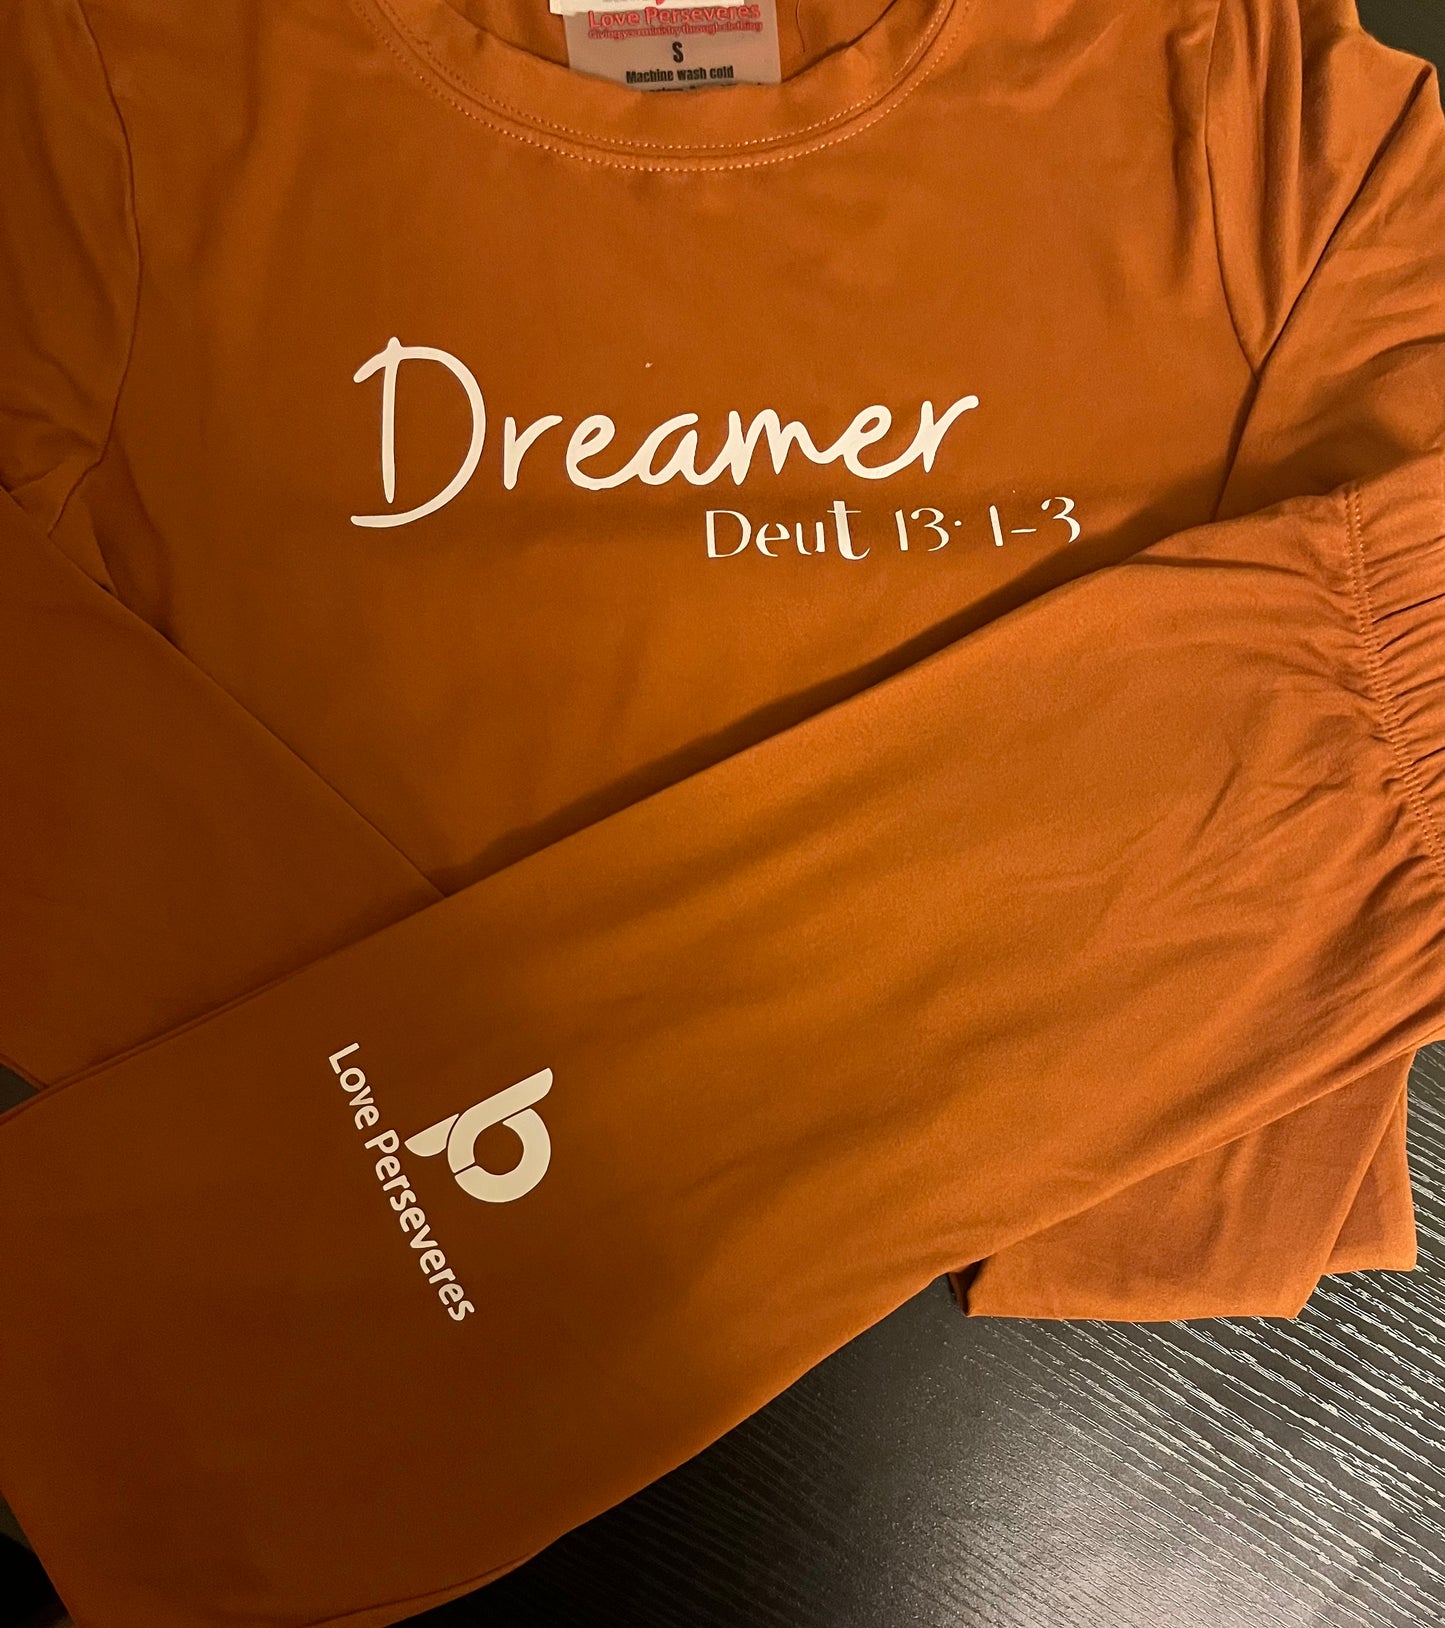 Dreamer Set $20